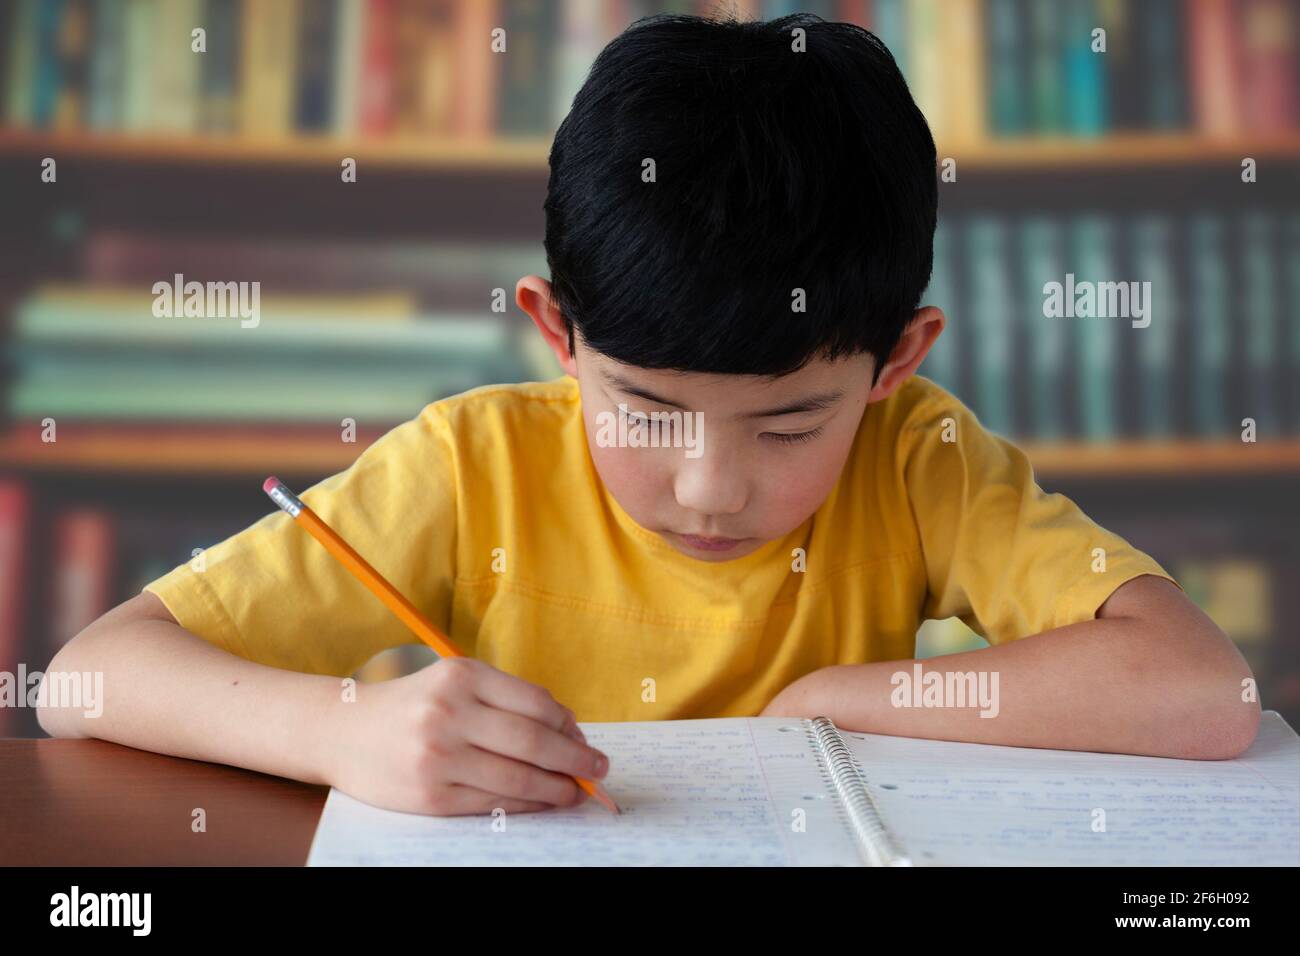 Junger asiatischer Junge, der in einer Bibliothek studiert und Hausaufgaben macht. Stockfoto